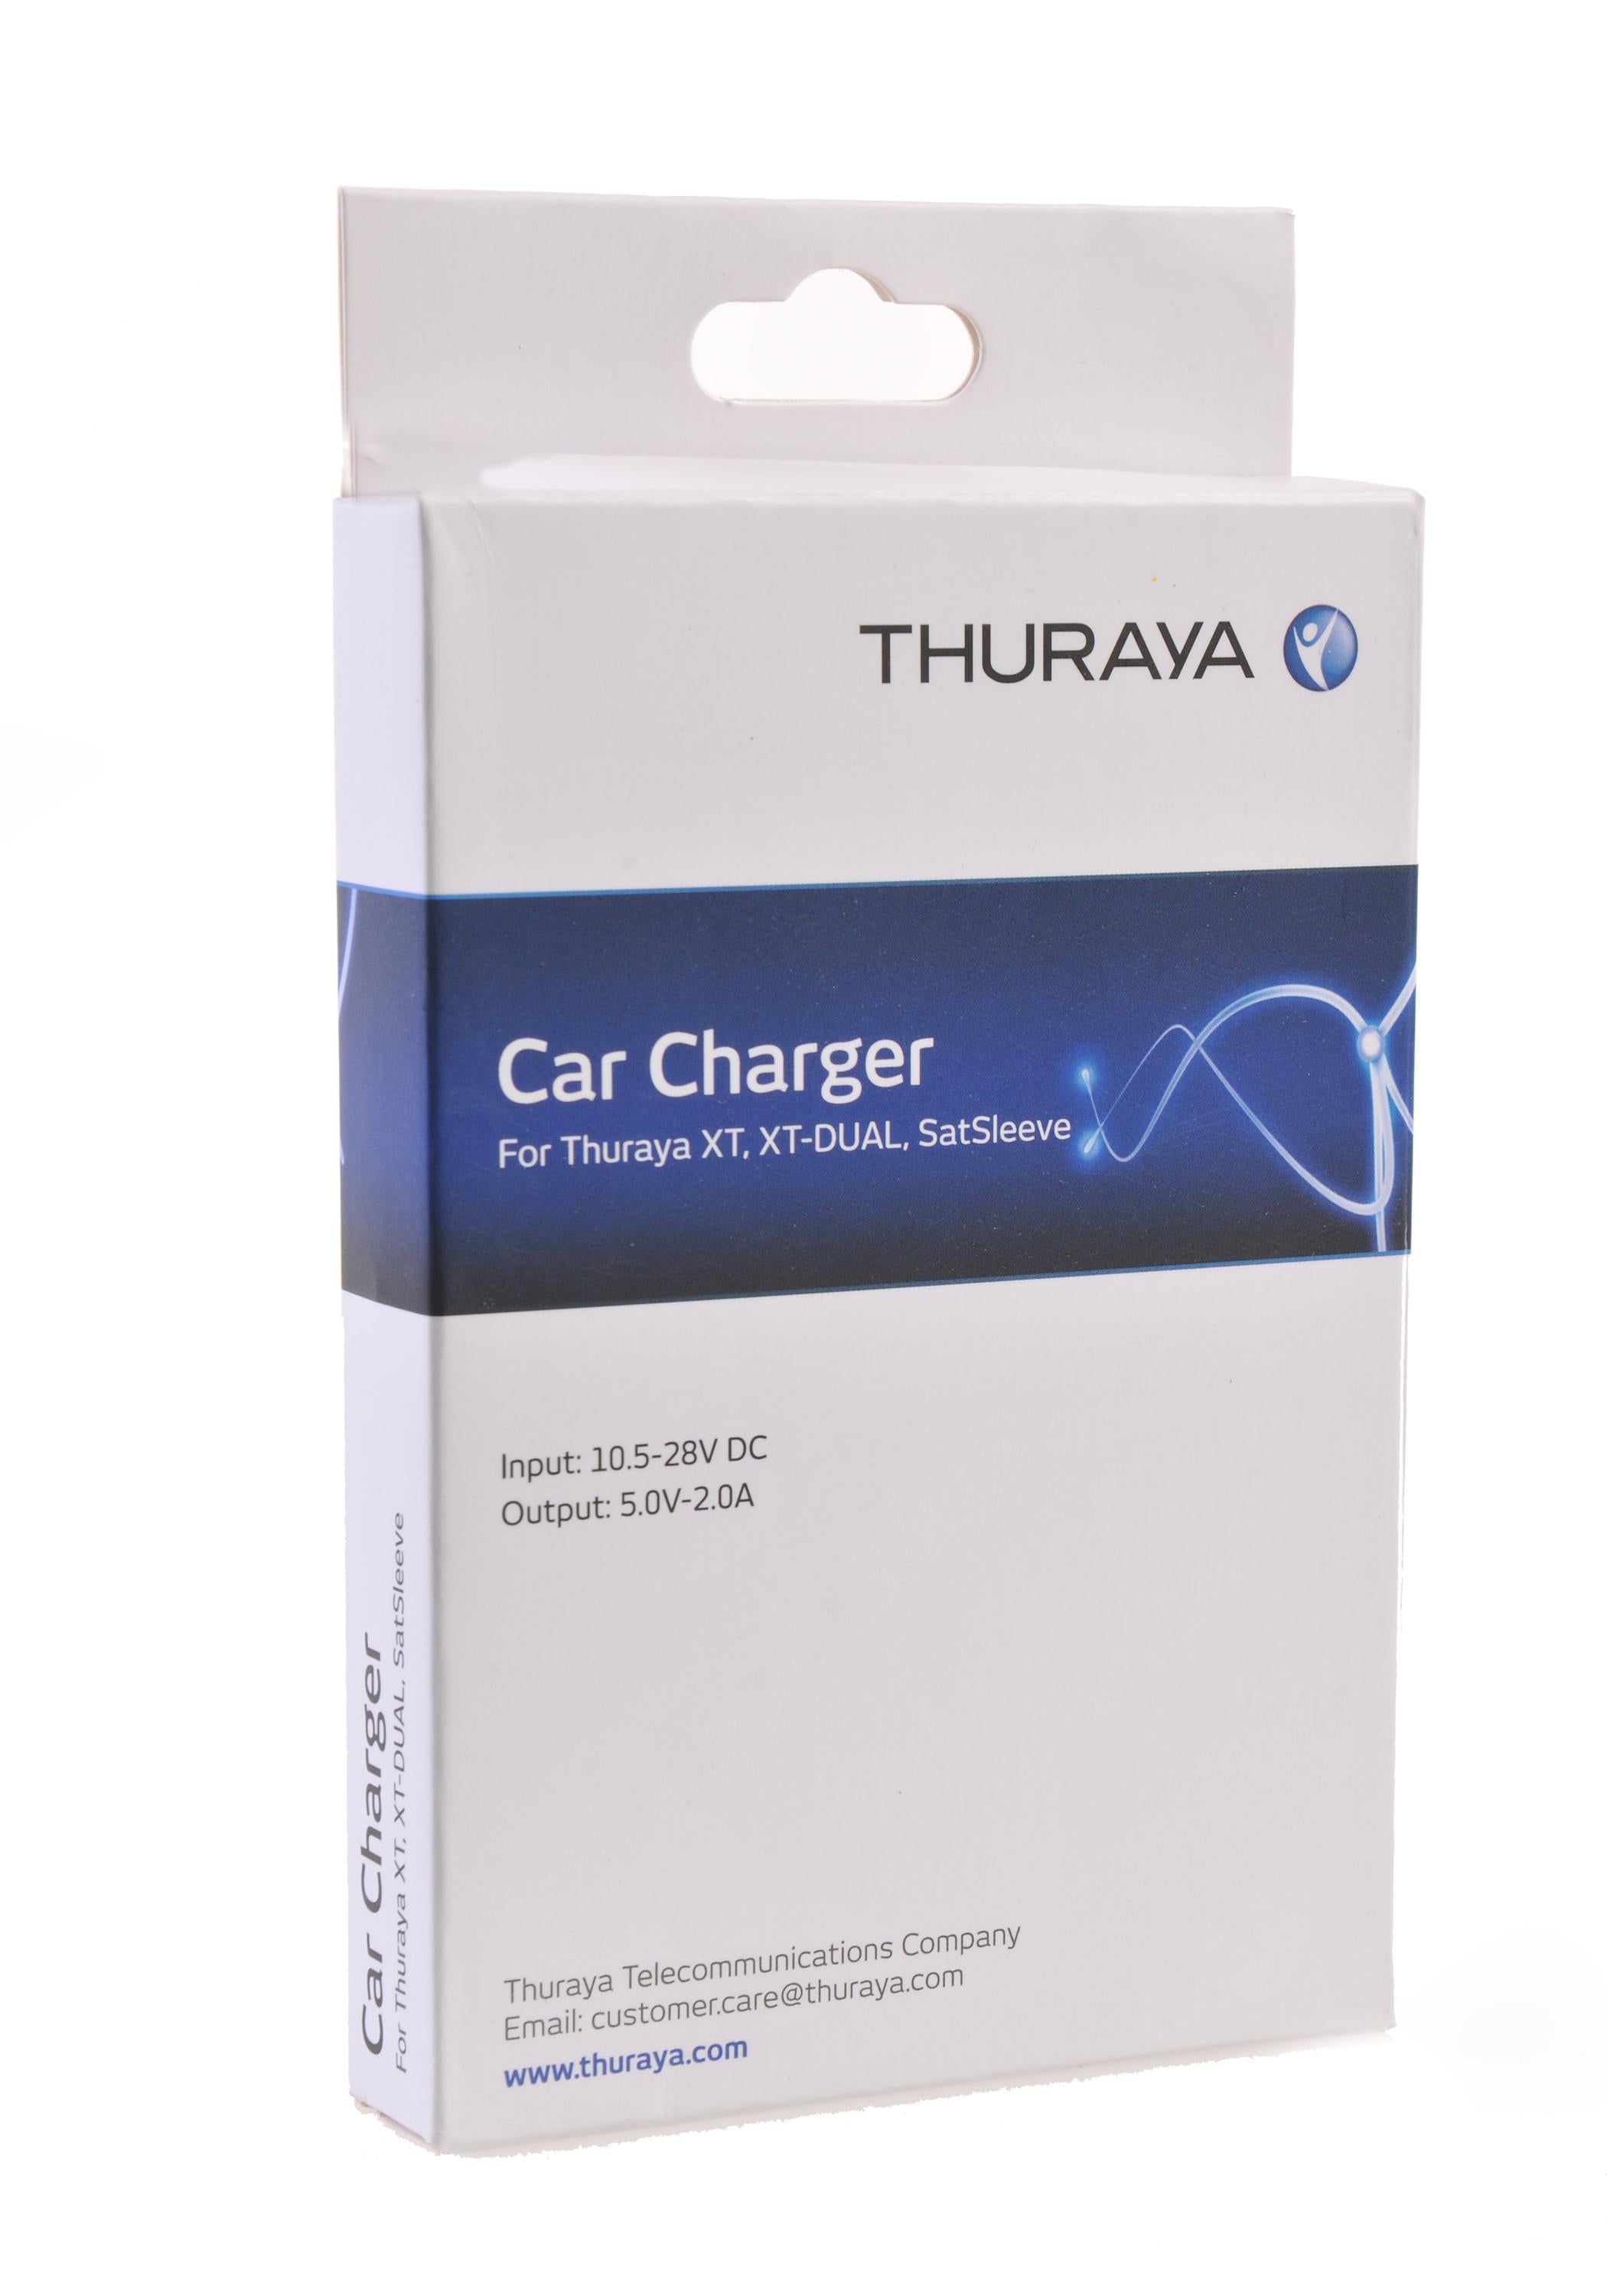 Thuraya Satellite Phone Car Charger